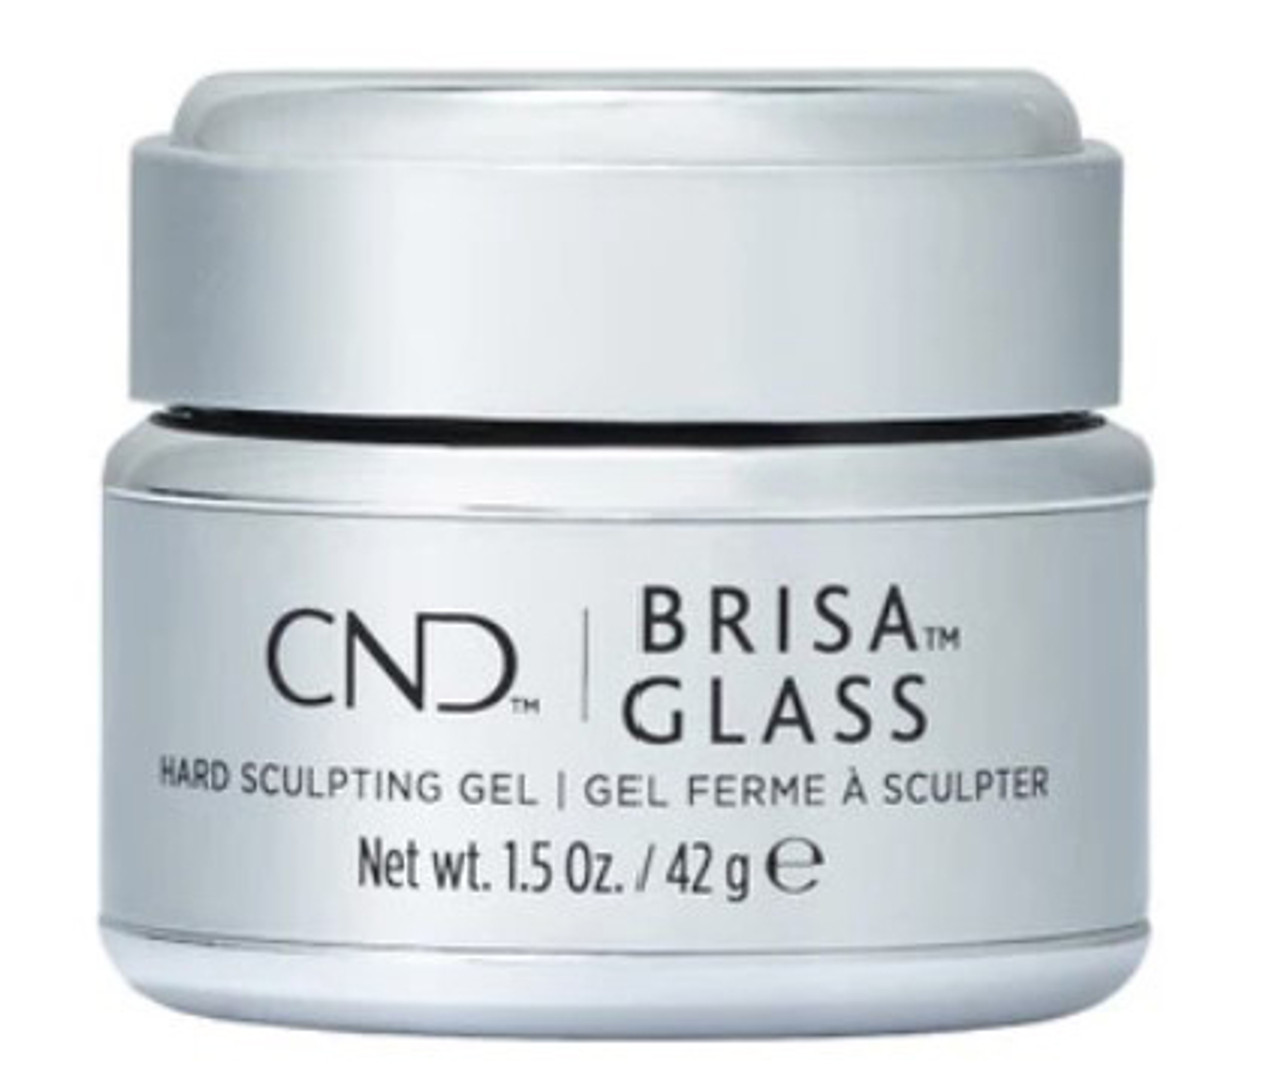 CND Brisa Gel Glass Hard Sculpting Gel - 1.5oz